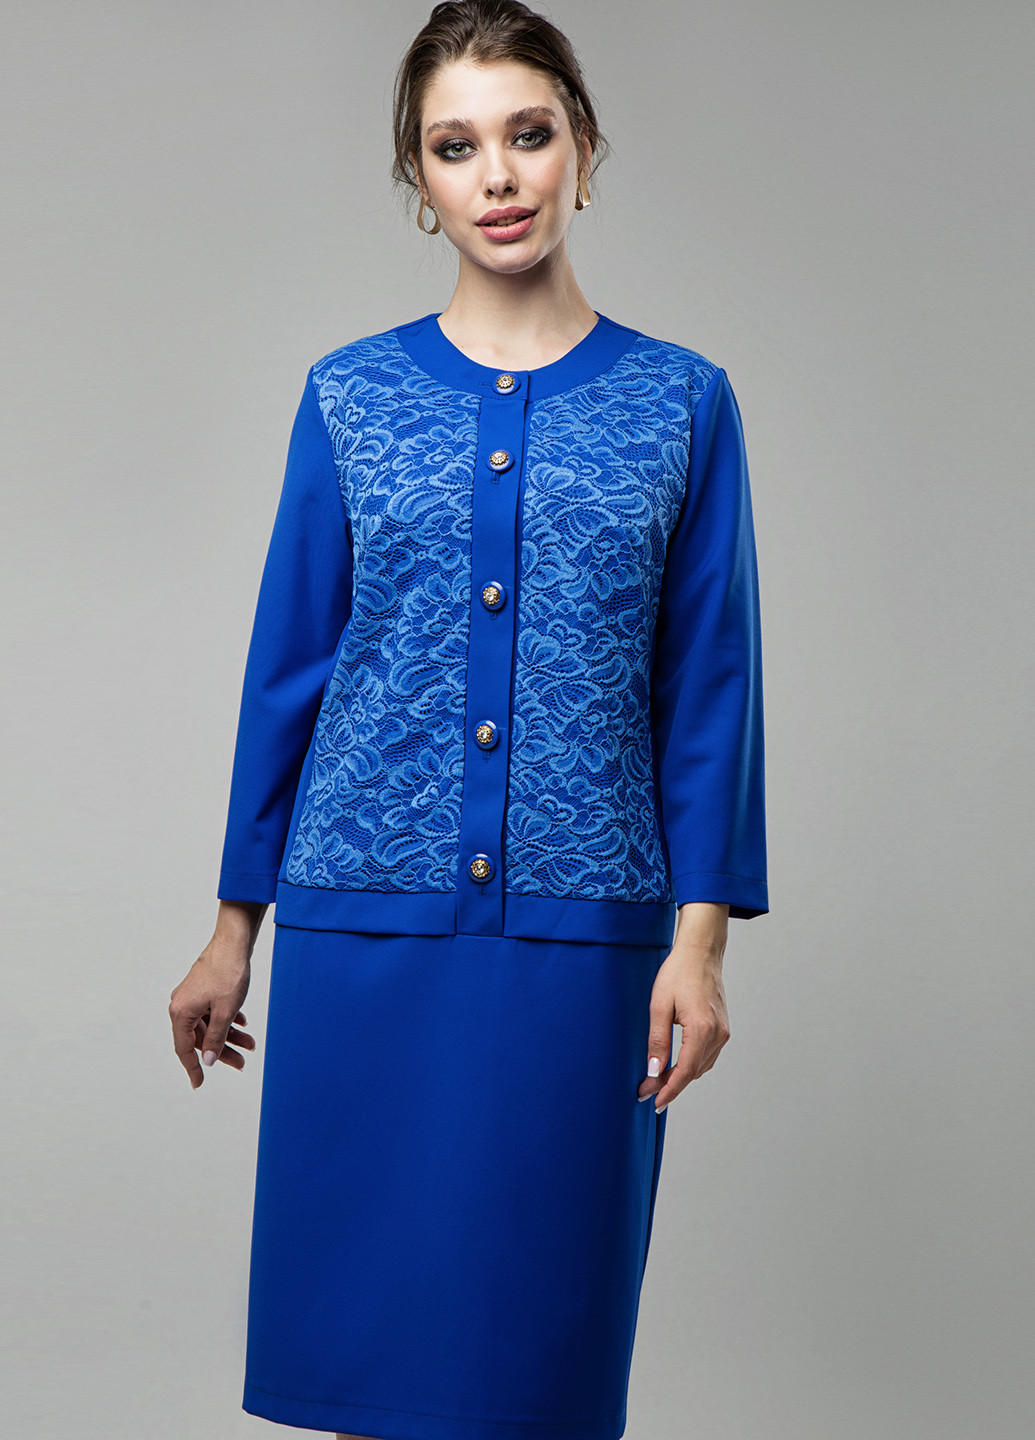 Светло-синее деловое платье электрик феерия Miledi